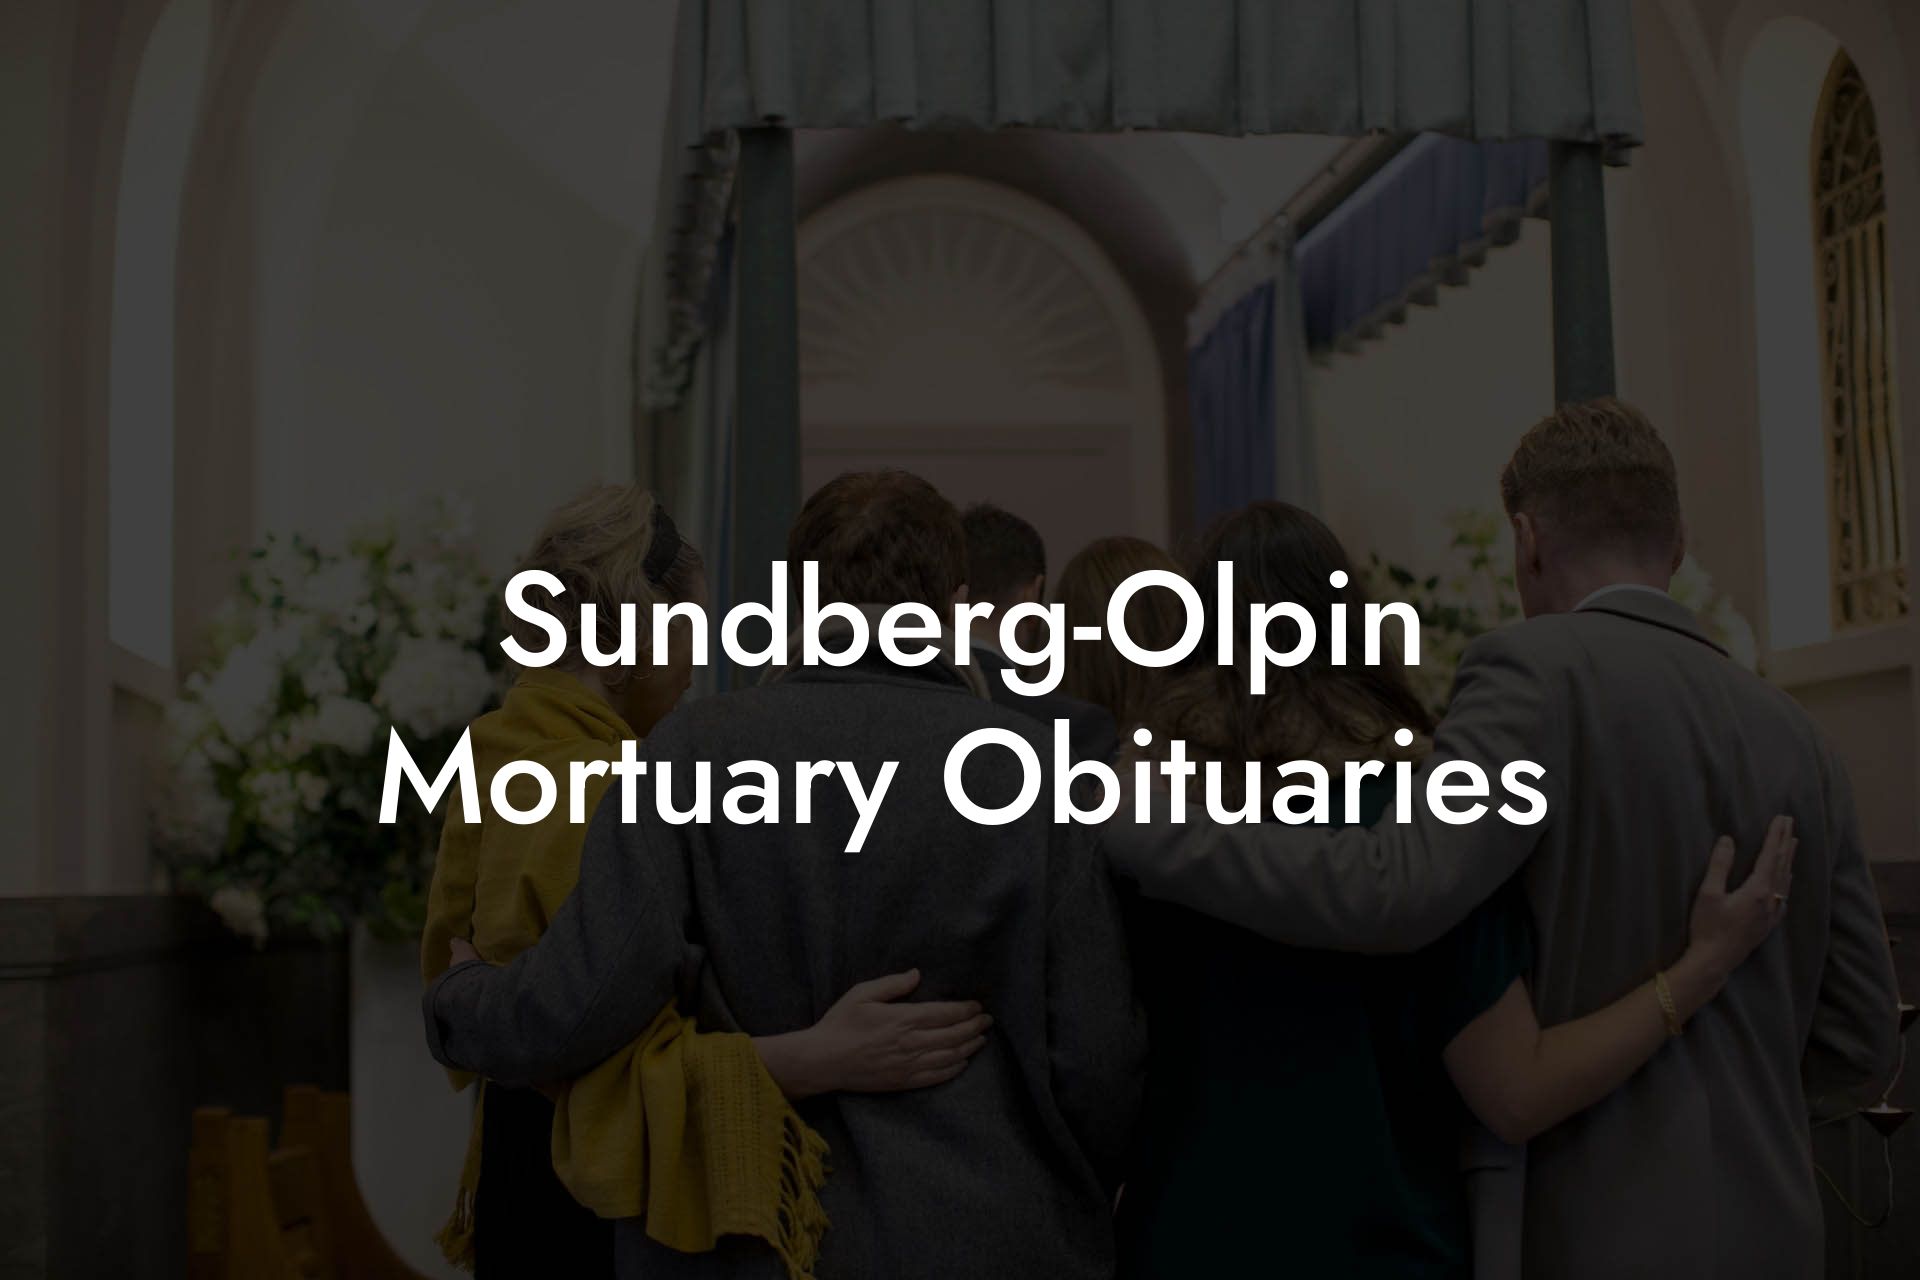 Sundberg-Olpin Mortuary Obituaries